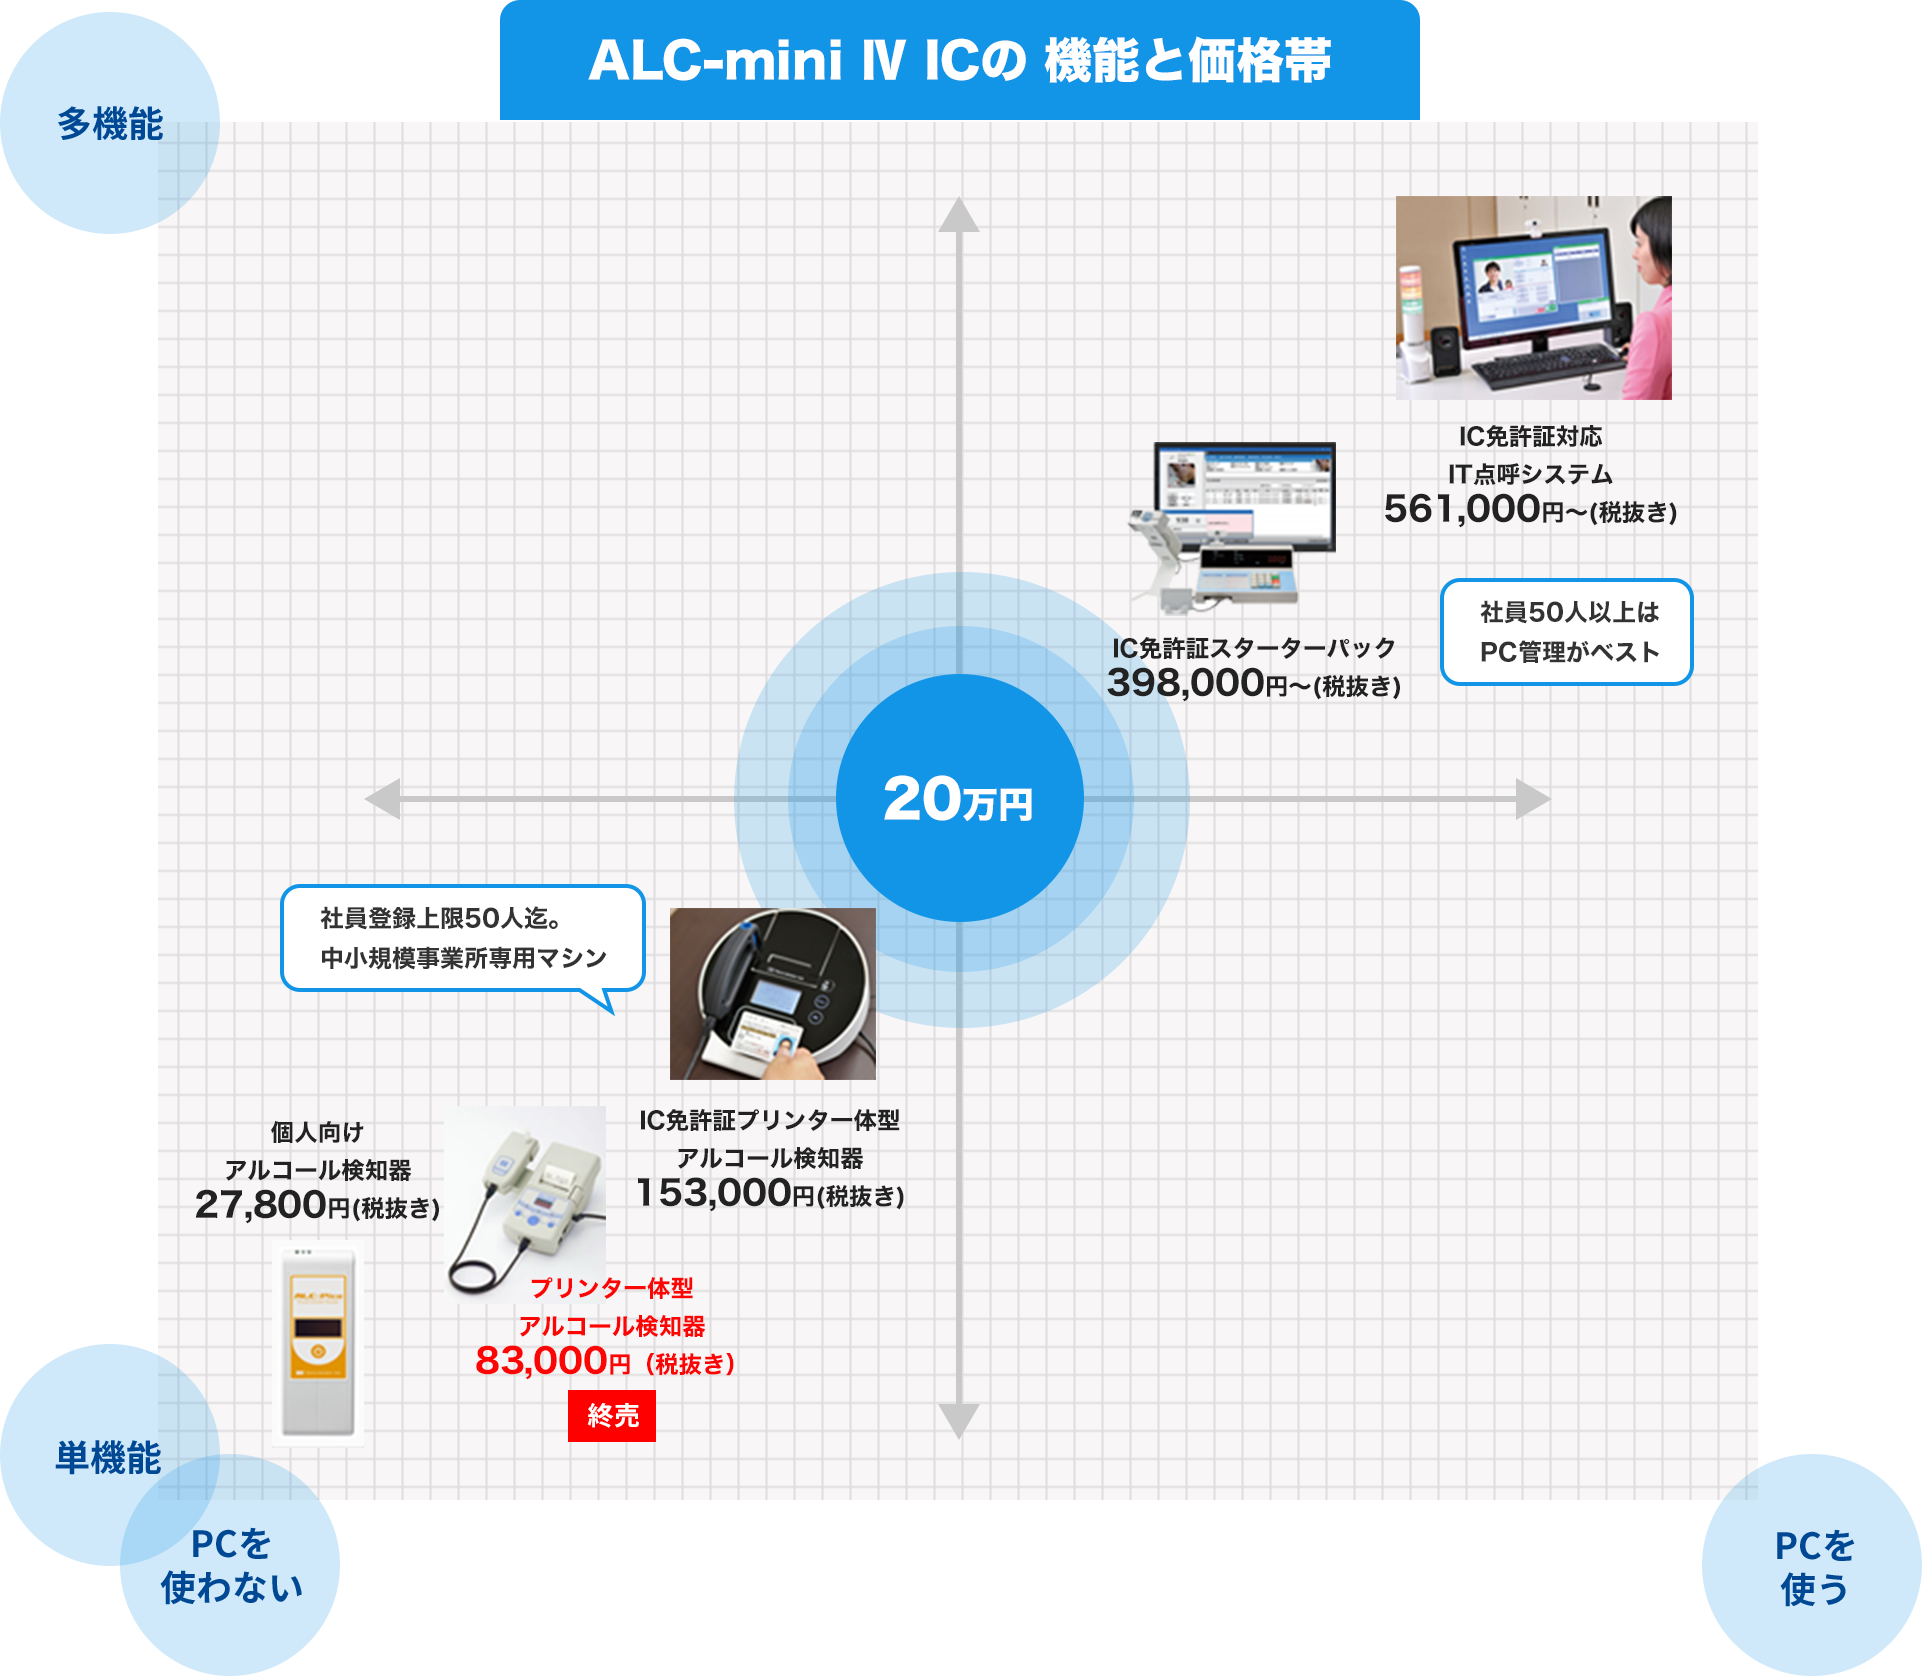 ALC-mini Ⅳ ICの 機能と価格帯